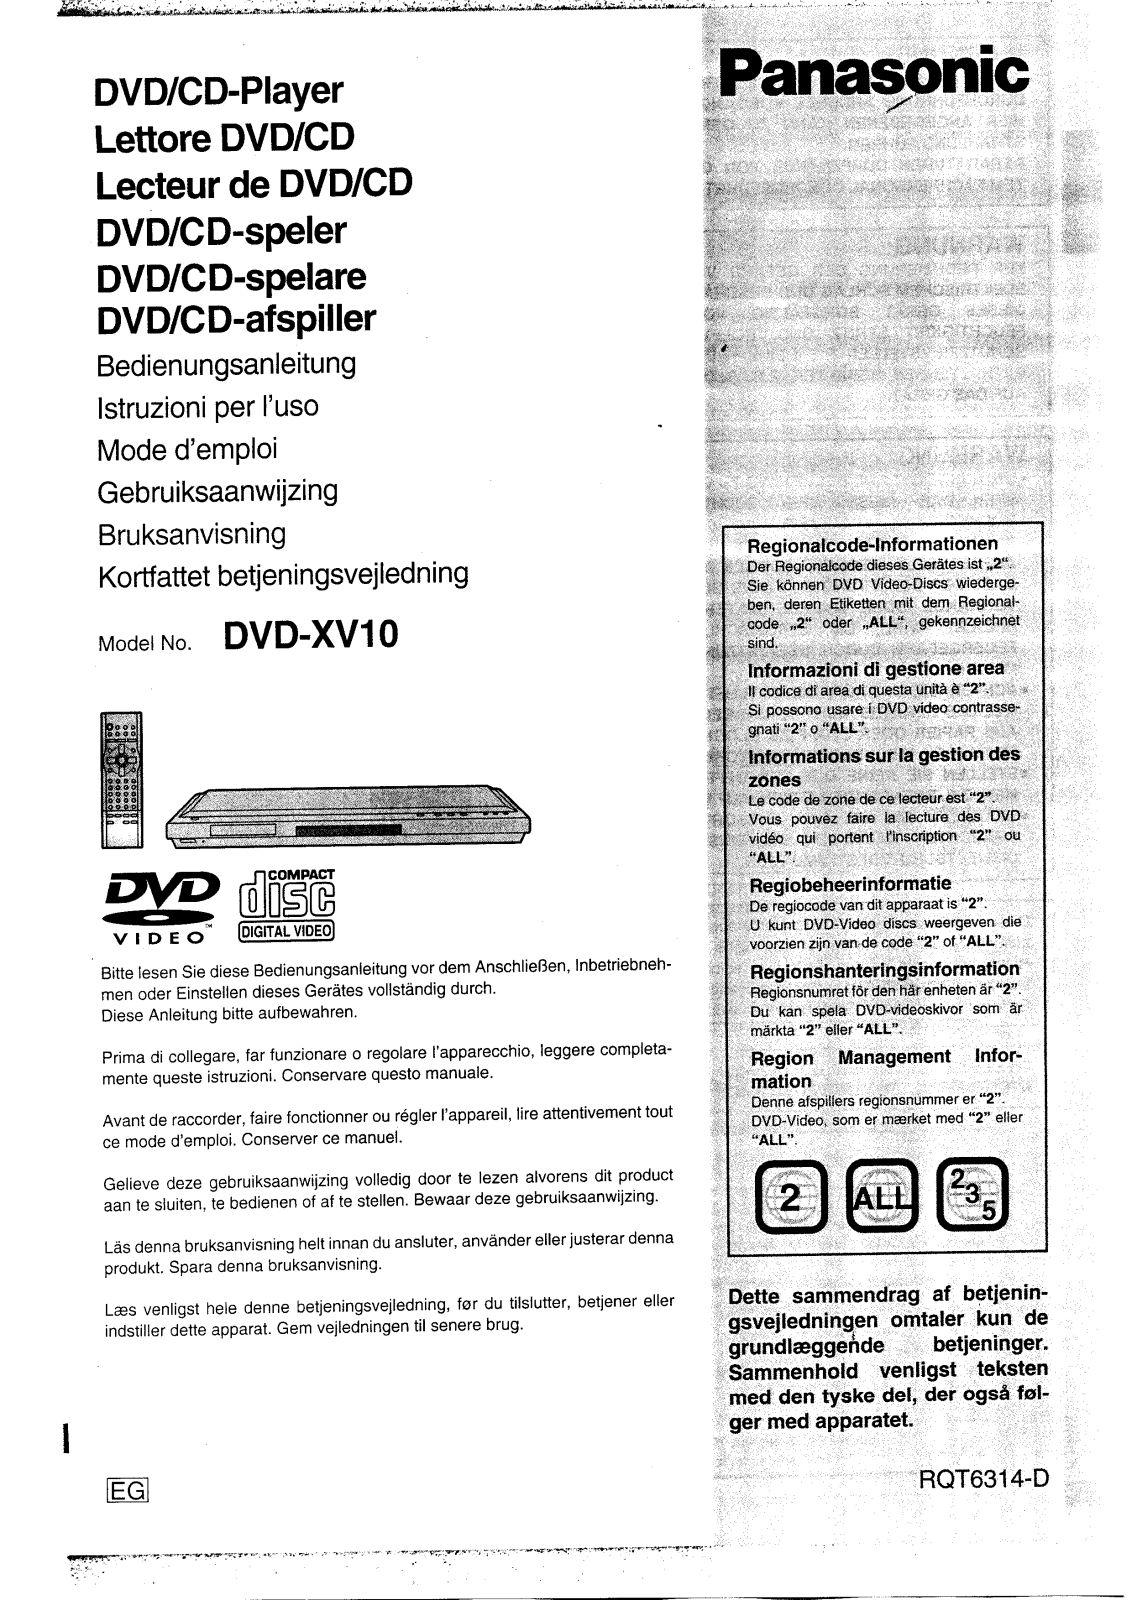 PANASONIC DVD-XV10EG User Manual